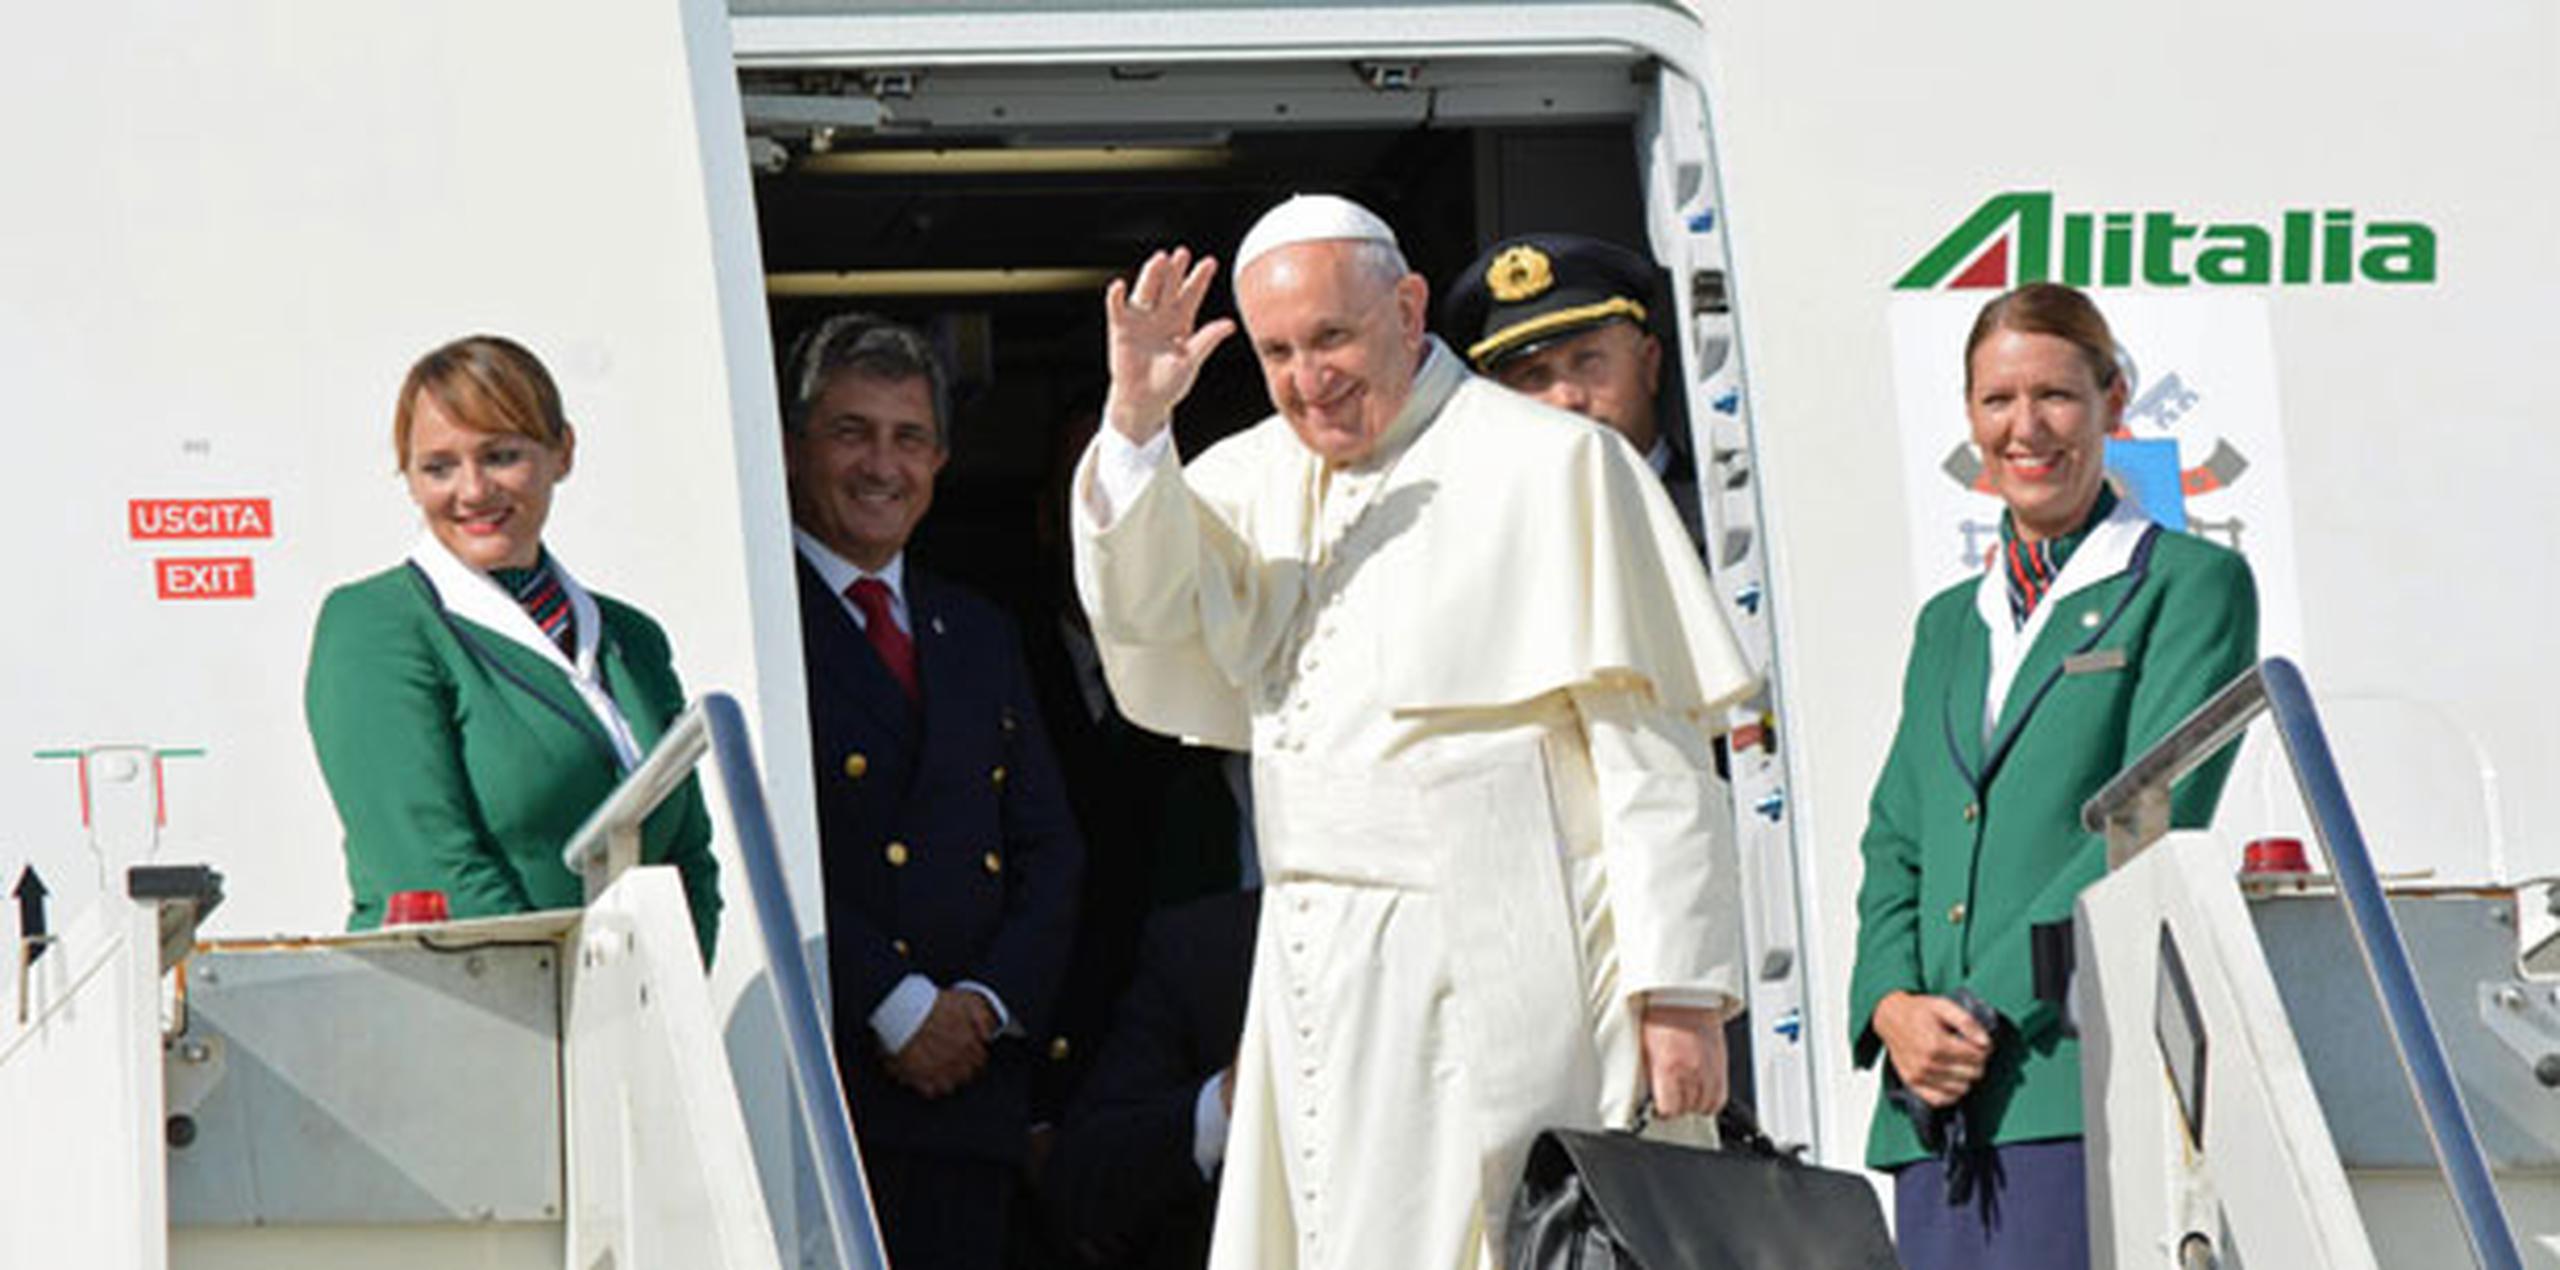 Francisco es el tercer papa que visita Cuba en las últimas dos décadas: Juan Pablo II estuvo en 1998 y Benedicto XVI en 2012. (EFE/EPA/TELENEWS)
